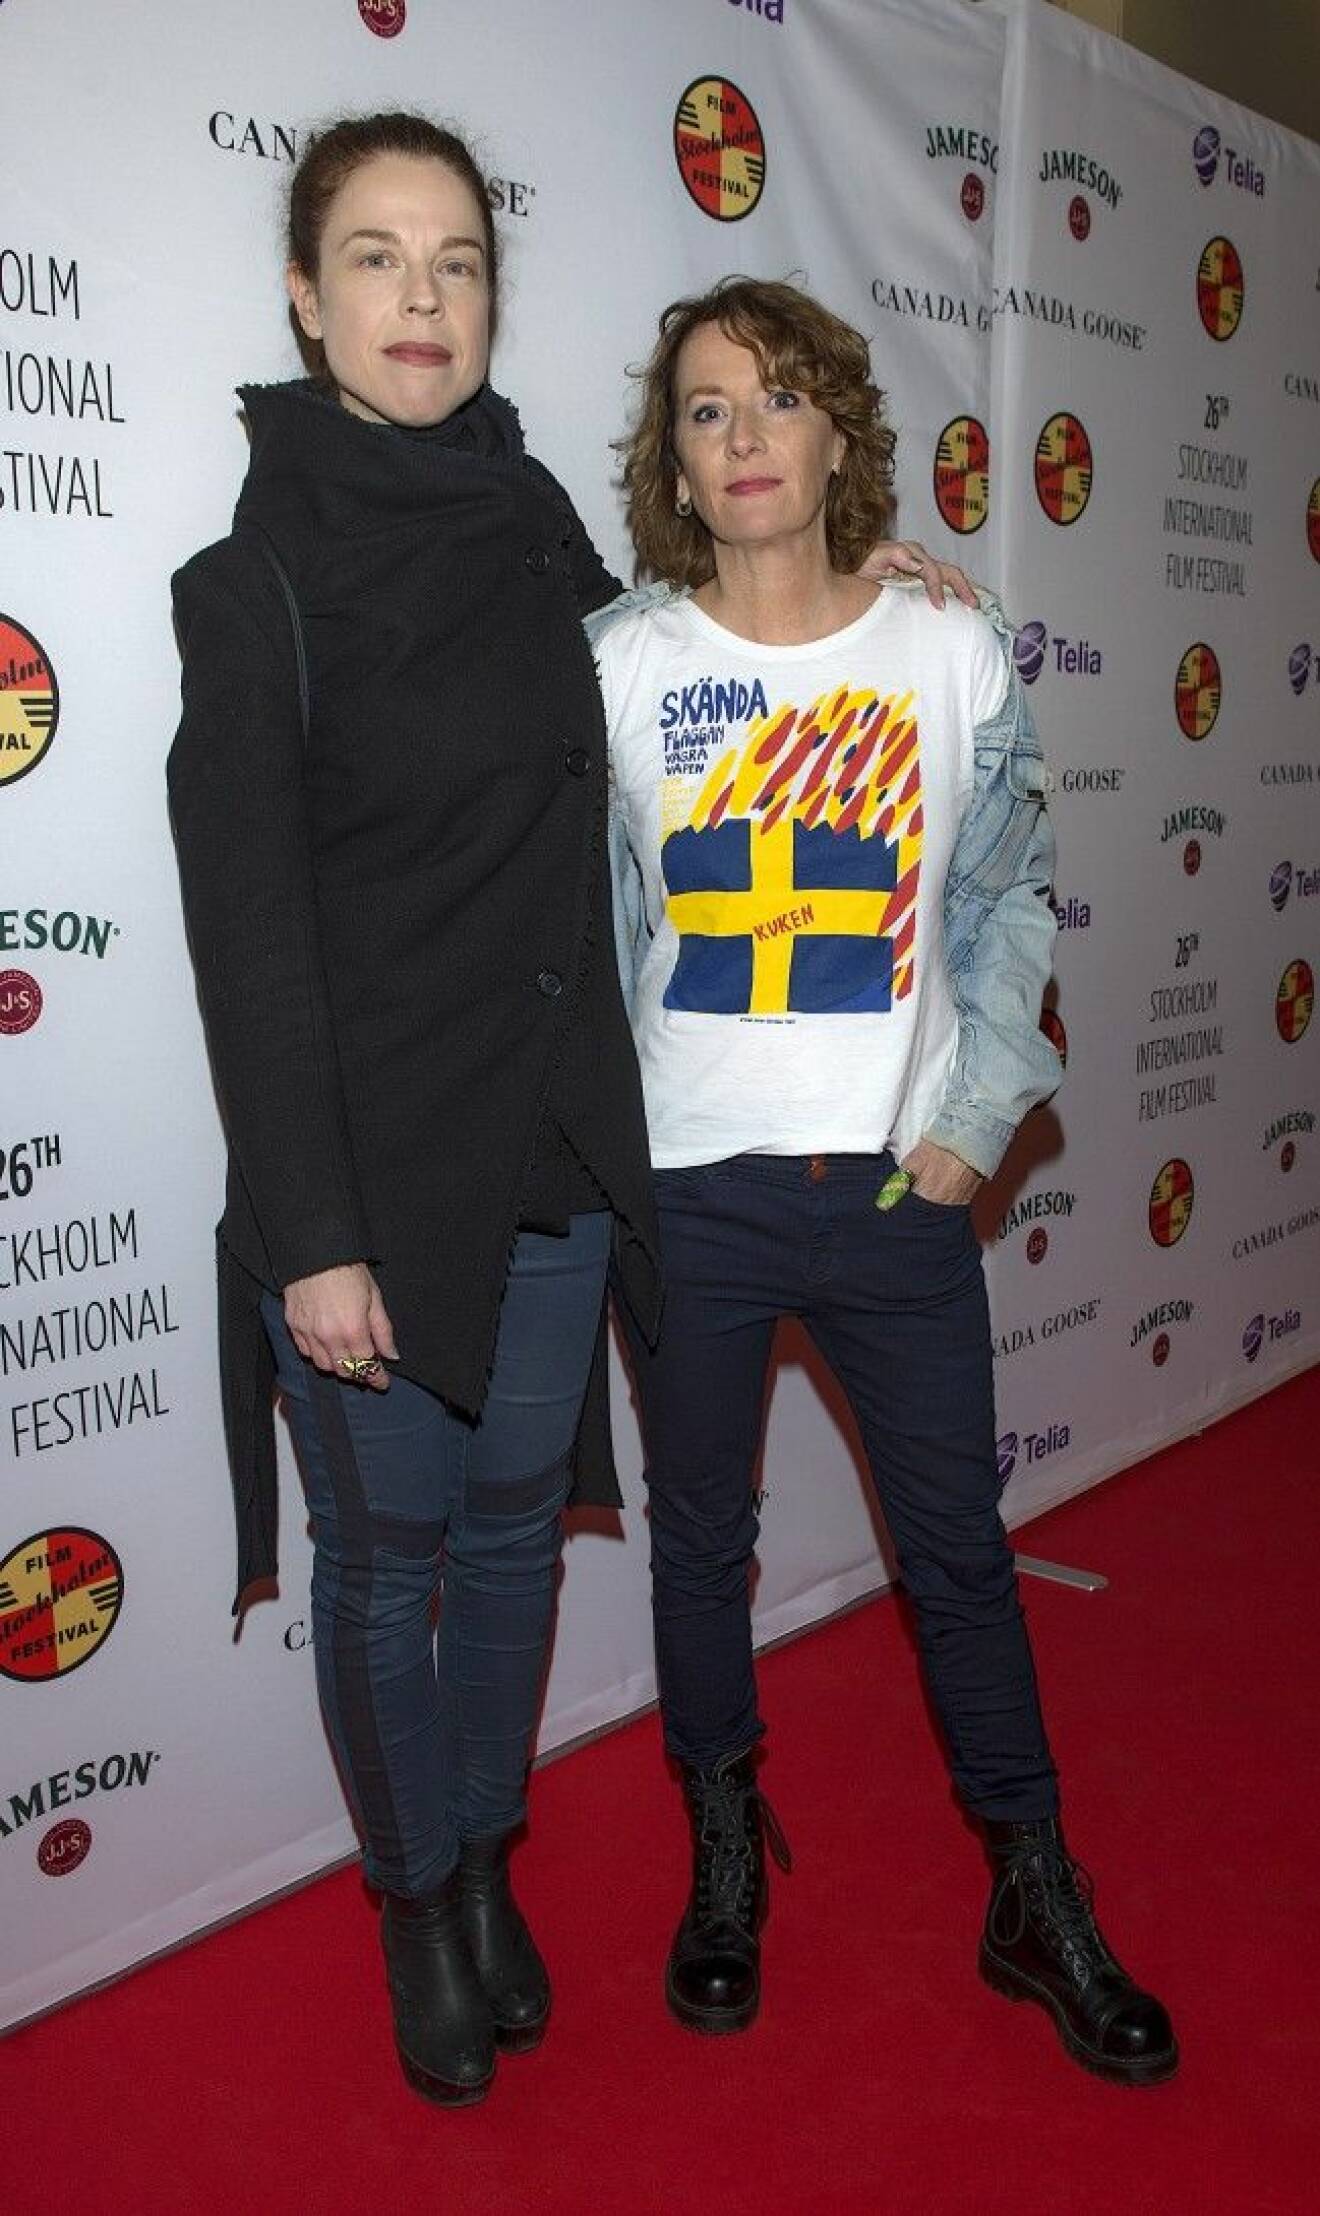 STOCKHOLM SWEDEN 15-11-10 Invigning av Stockholm Filmfestival 2015 på biograf Scandia Bilden Jessika Gedin och Mian Lodalen Foto ©Eero Hannukainen EEROBILD AB All Over Press